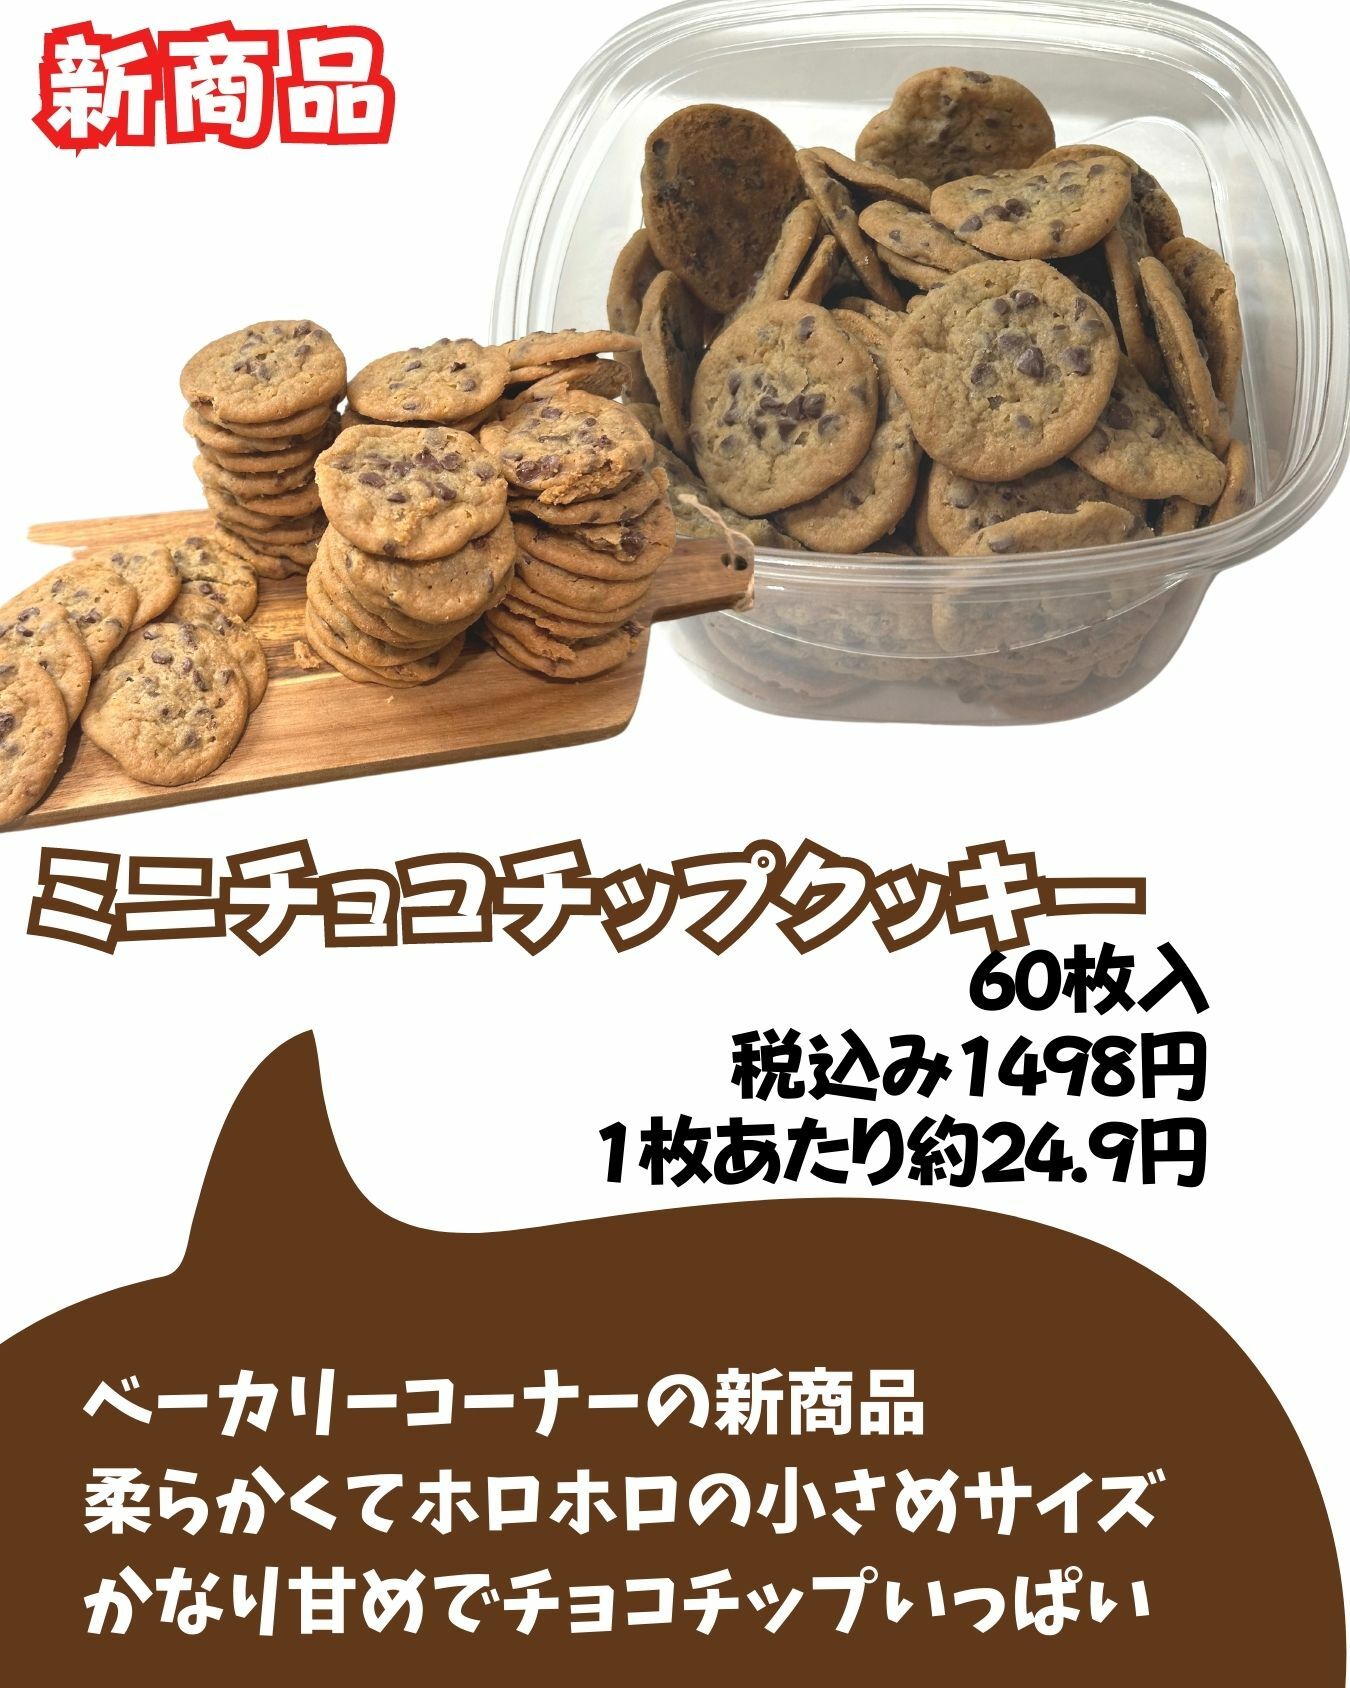 【コストコ】ミニチョコチップクッキー